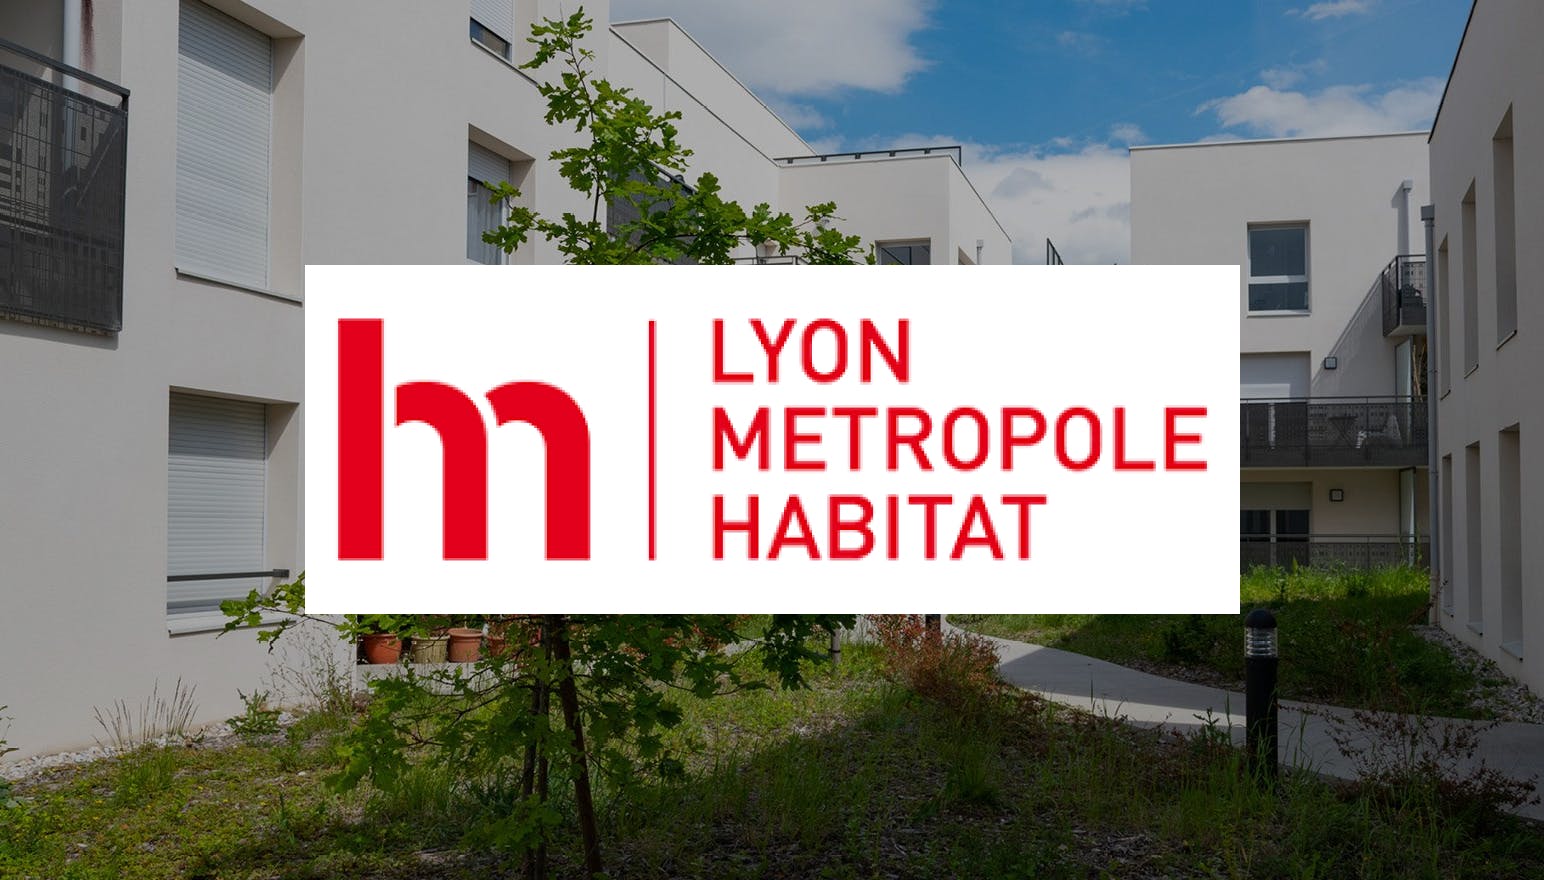 Lyon Métropole Habitat maintient sa certification ISO 50001 grâce à la solution Wattsense 